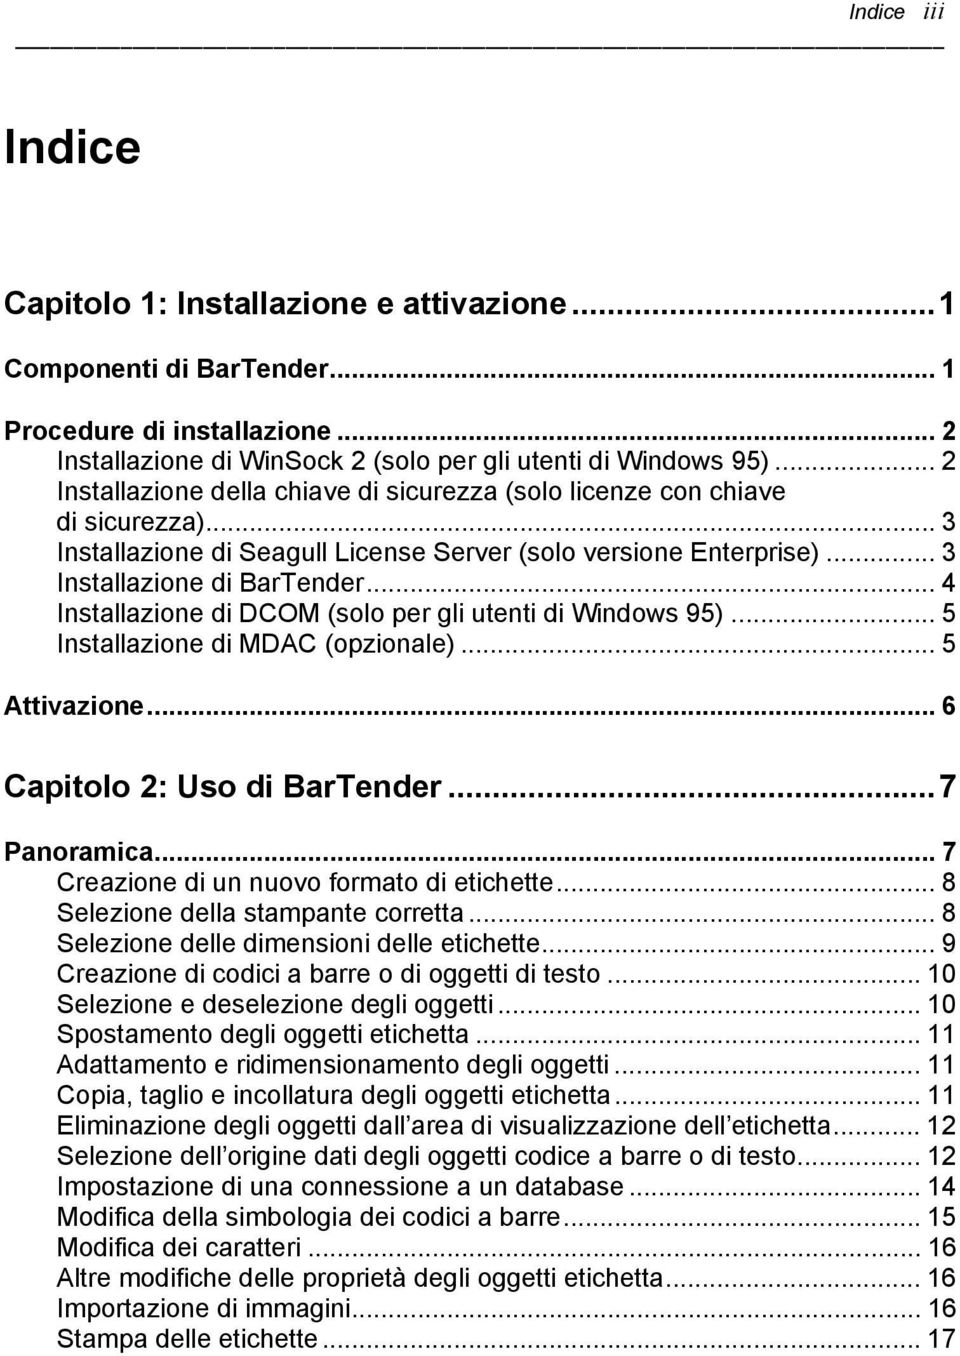 .. 4 Installazione di DCOM (solo per gli utenti di Windows 95)... 5 Installazione di MDAC (opzionale)... 5 Attivazione... 6 Capitolo 2: Uso di BarTender...7 Panoramica.